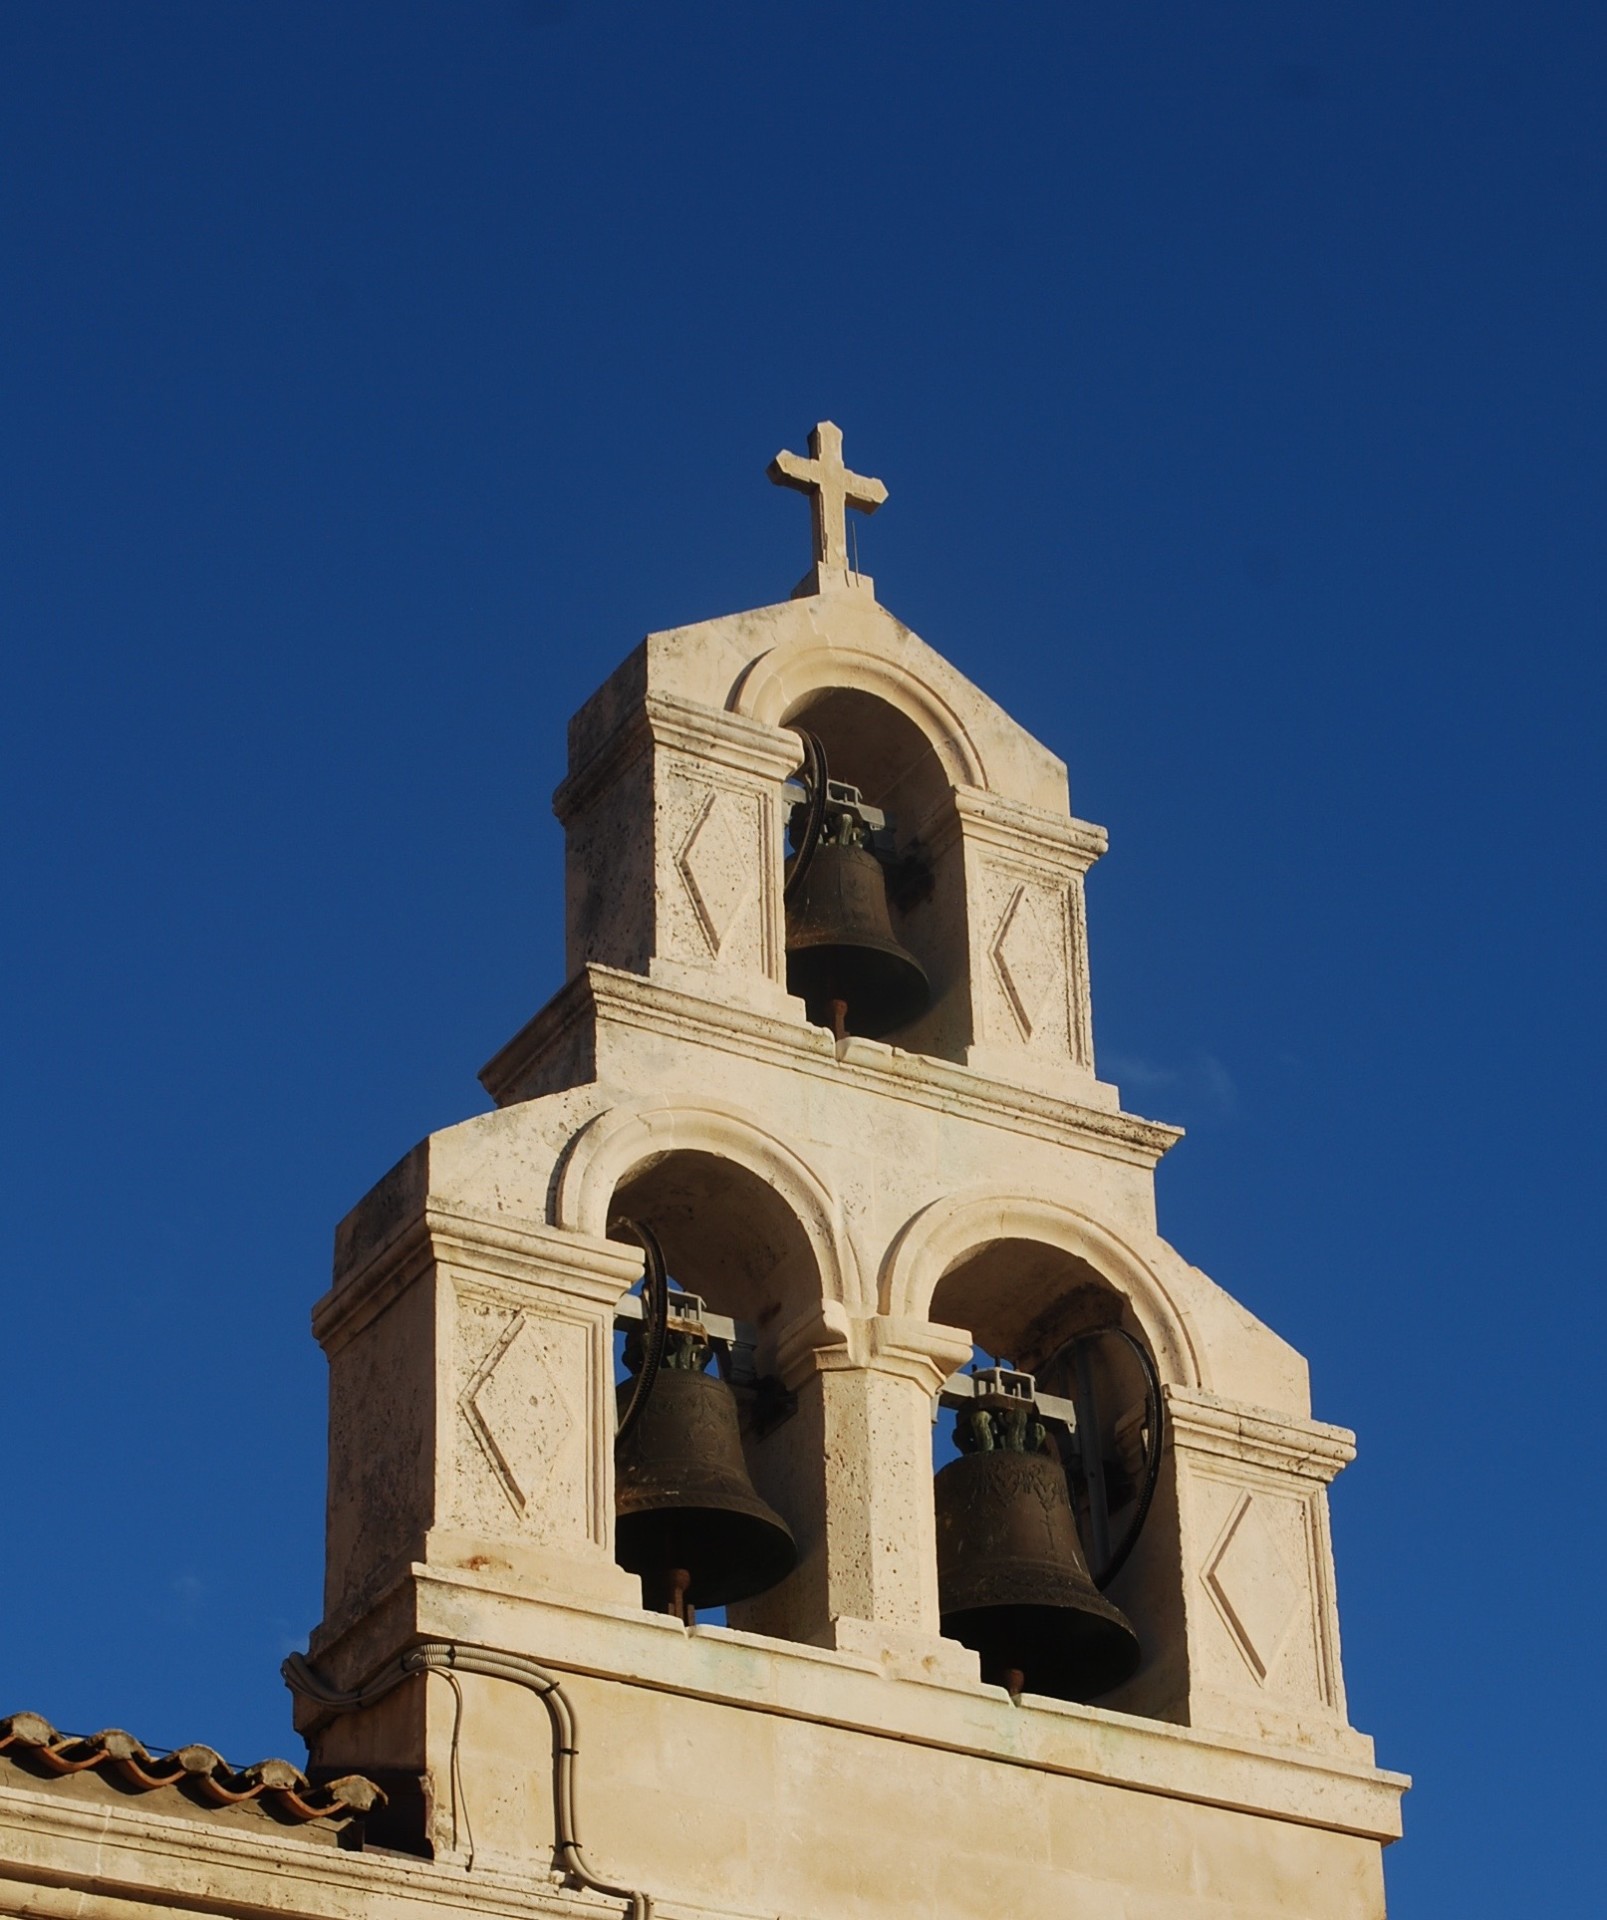 Bells of St. Blaise